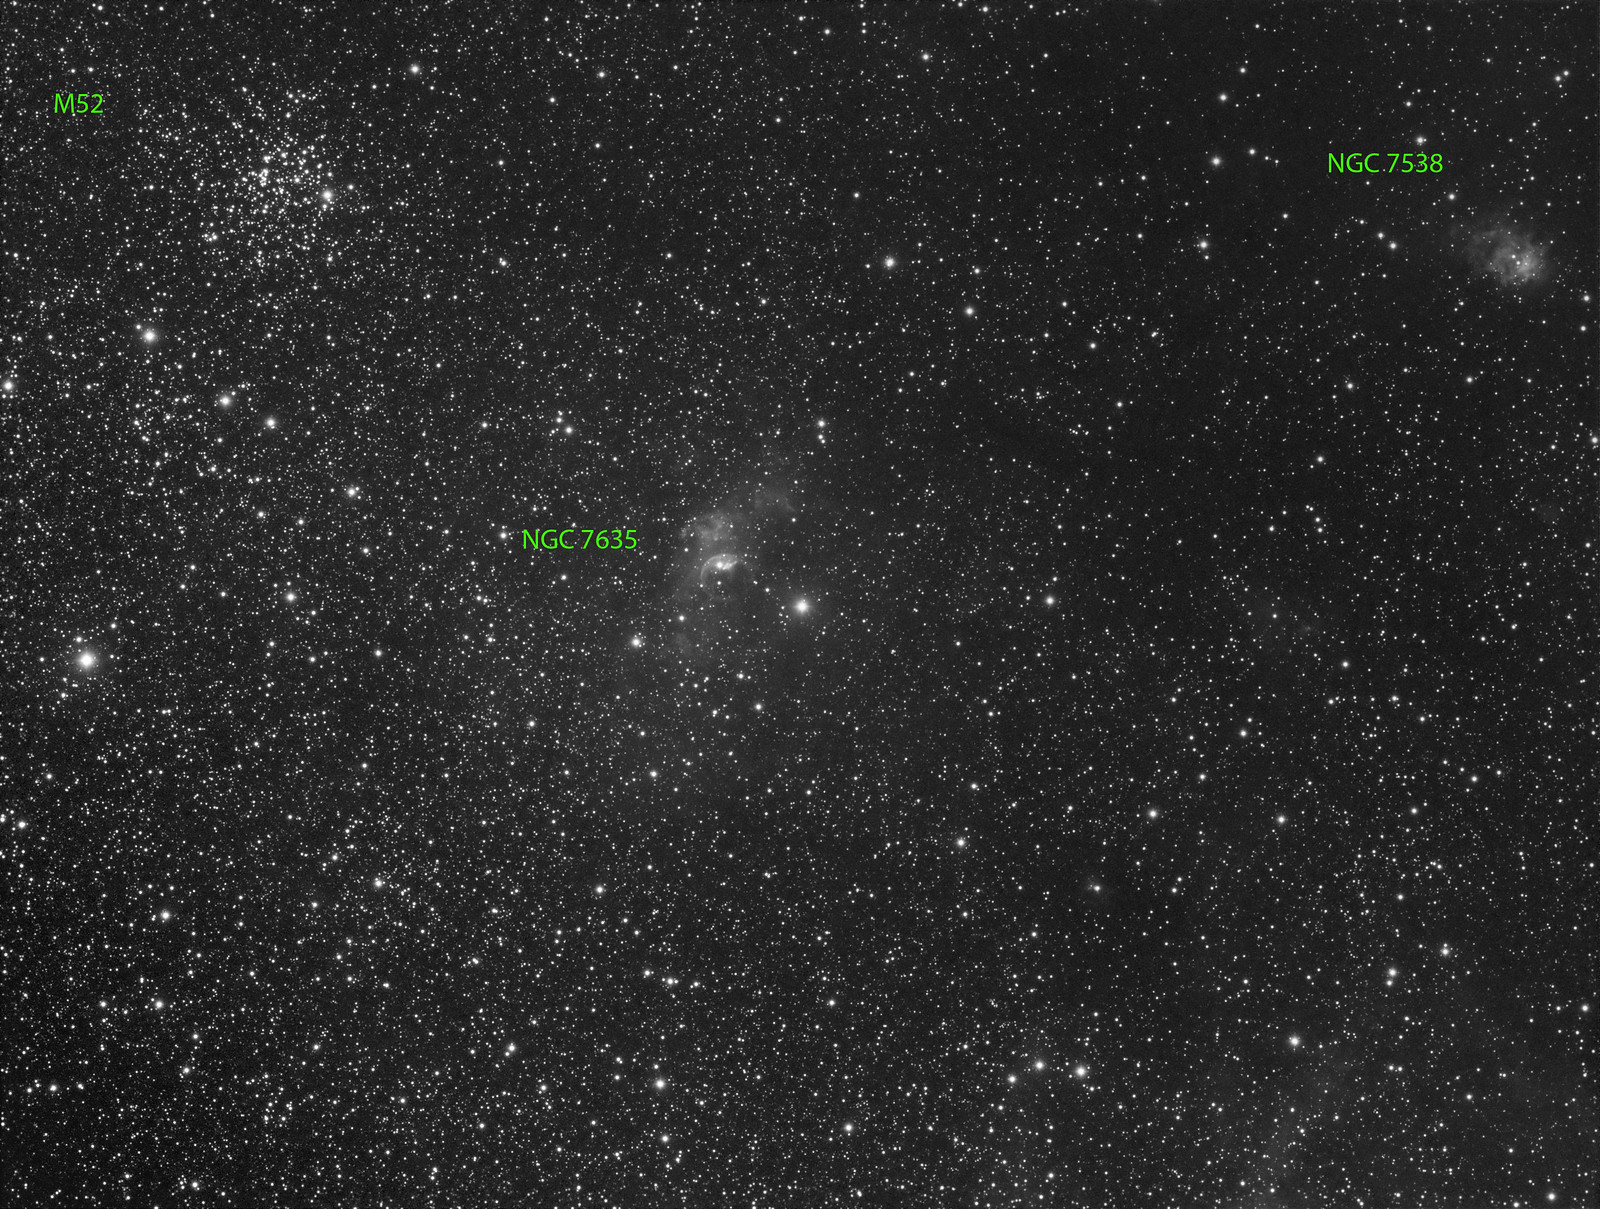 011 - NGC 7635 - Luminance